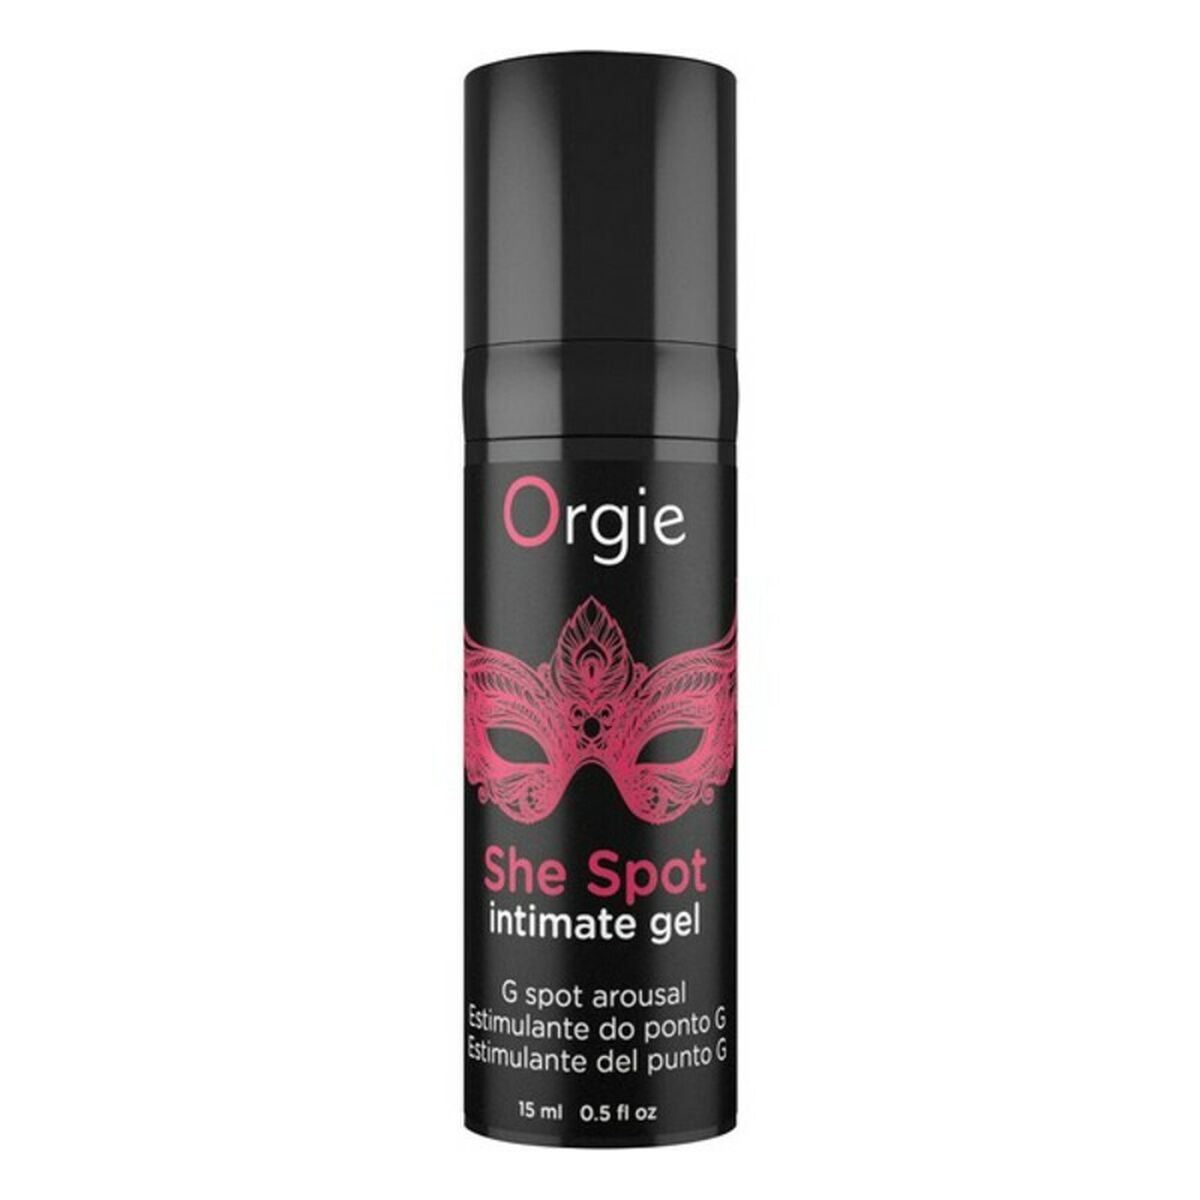 Osta tuote Liukuvoide She Spot Orgie (15 ml) verkkokaupastamme Korhone: Seksikauppa & Erotiikka 20% alennuksella koodilla VIIKONLOPPU